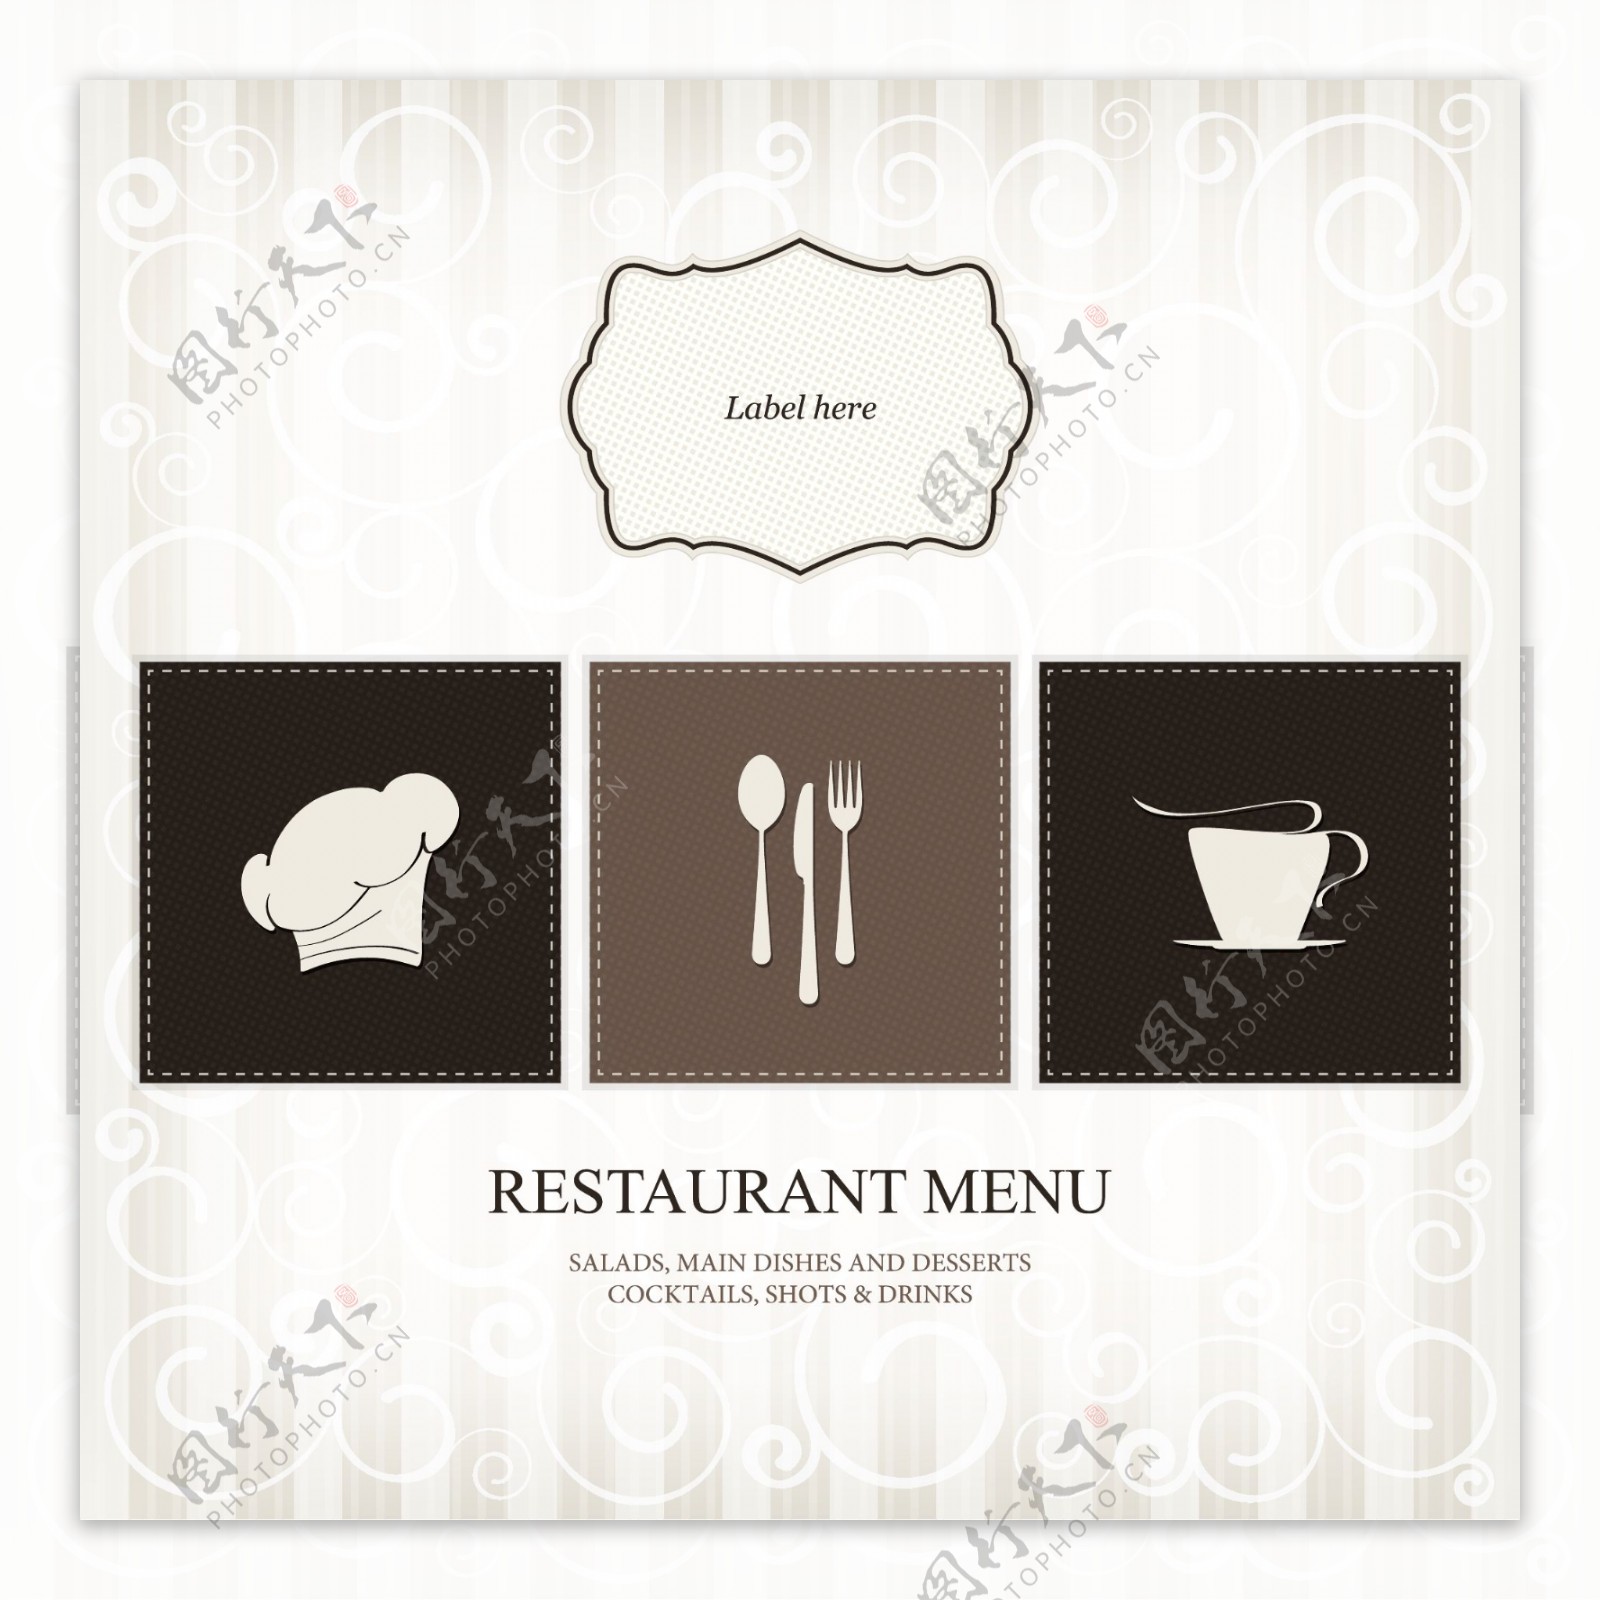 欧式花纹欧式菜单封面设计图片